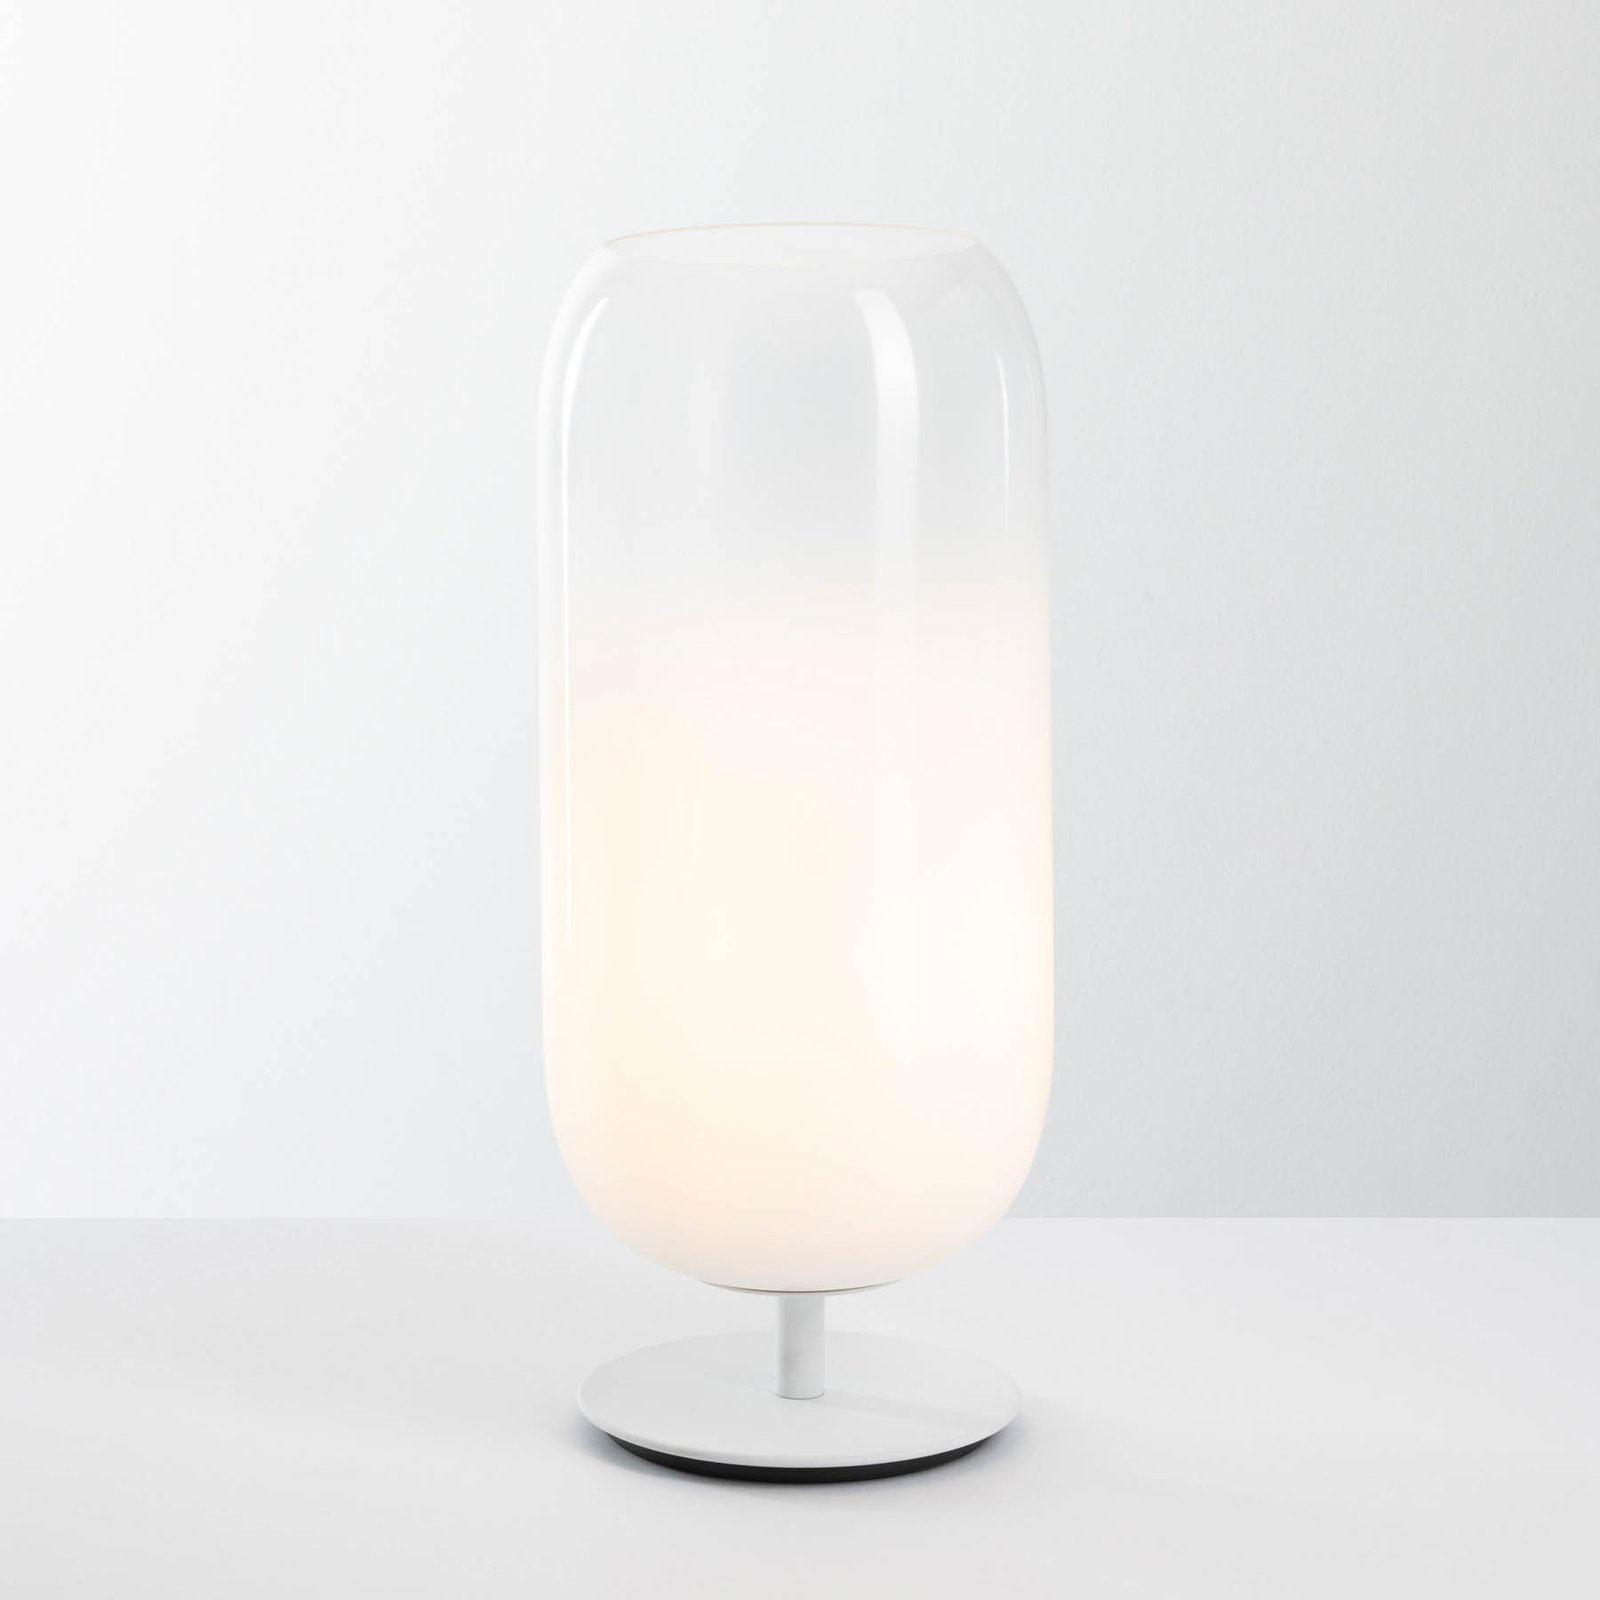 Artemide Gople Mini stolní lampa, bílá/bílá